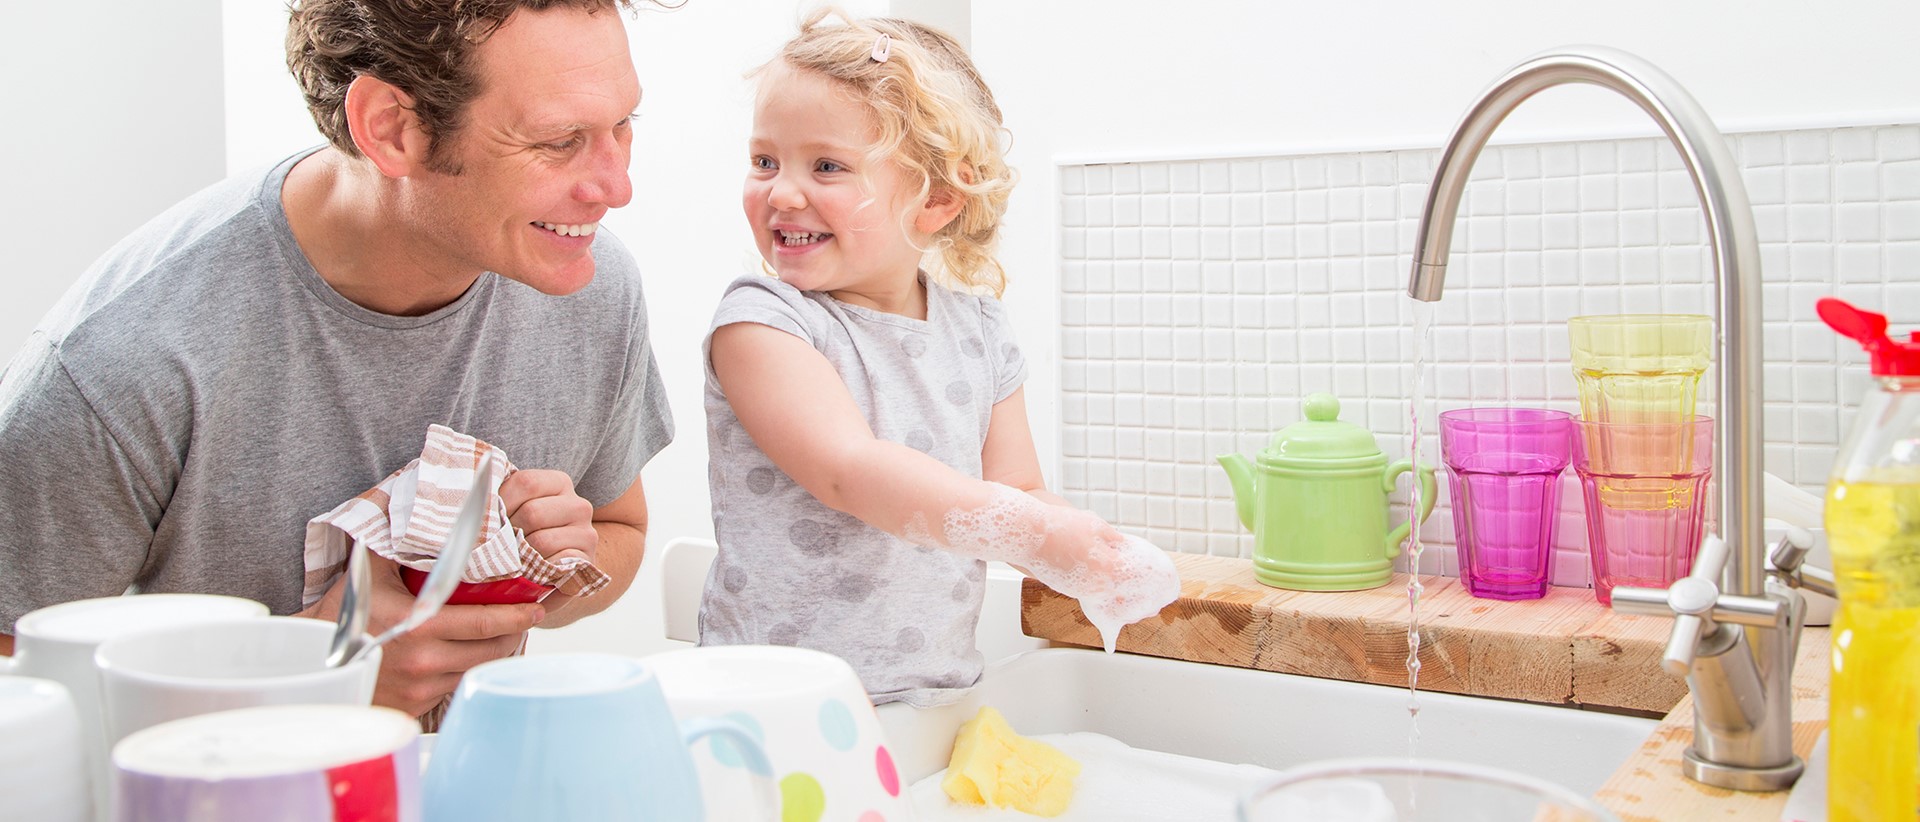 Vader en dochter zijn aan het afwassen | Vattenfall over aansluiting op warmtenetwerk